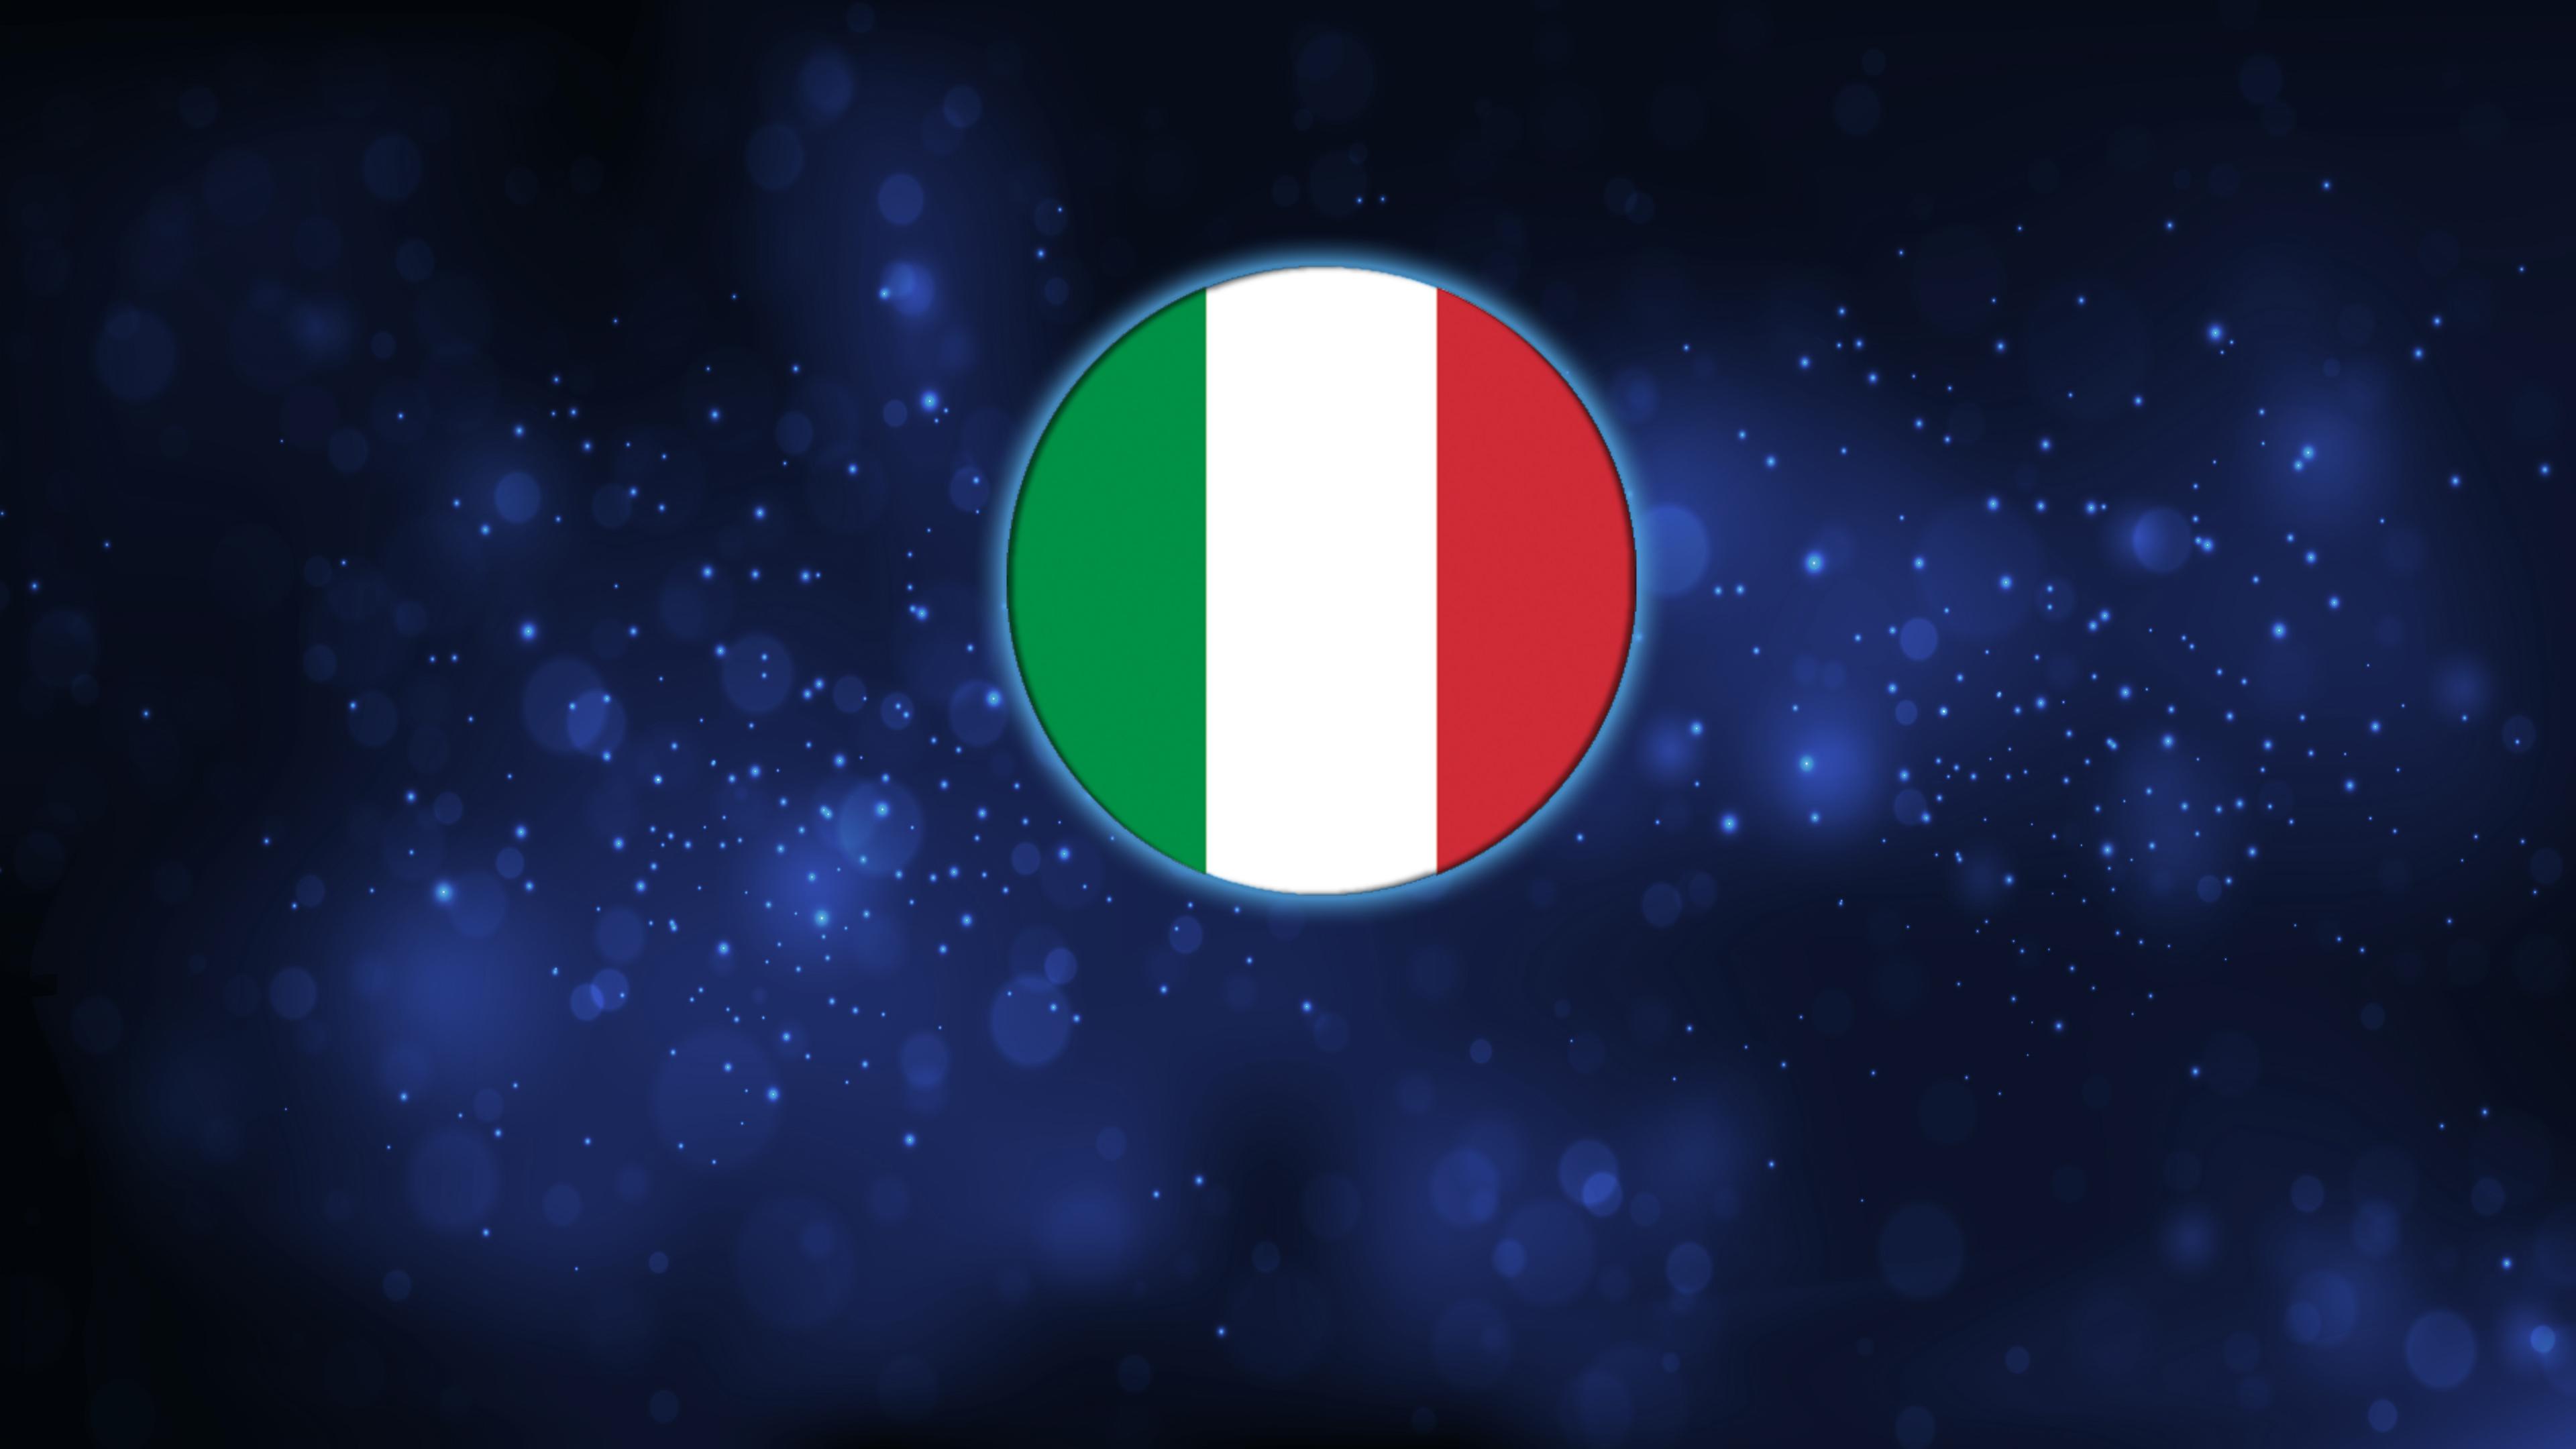 Quiz Thiz Italy: Bronze Edition